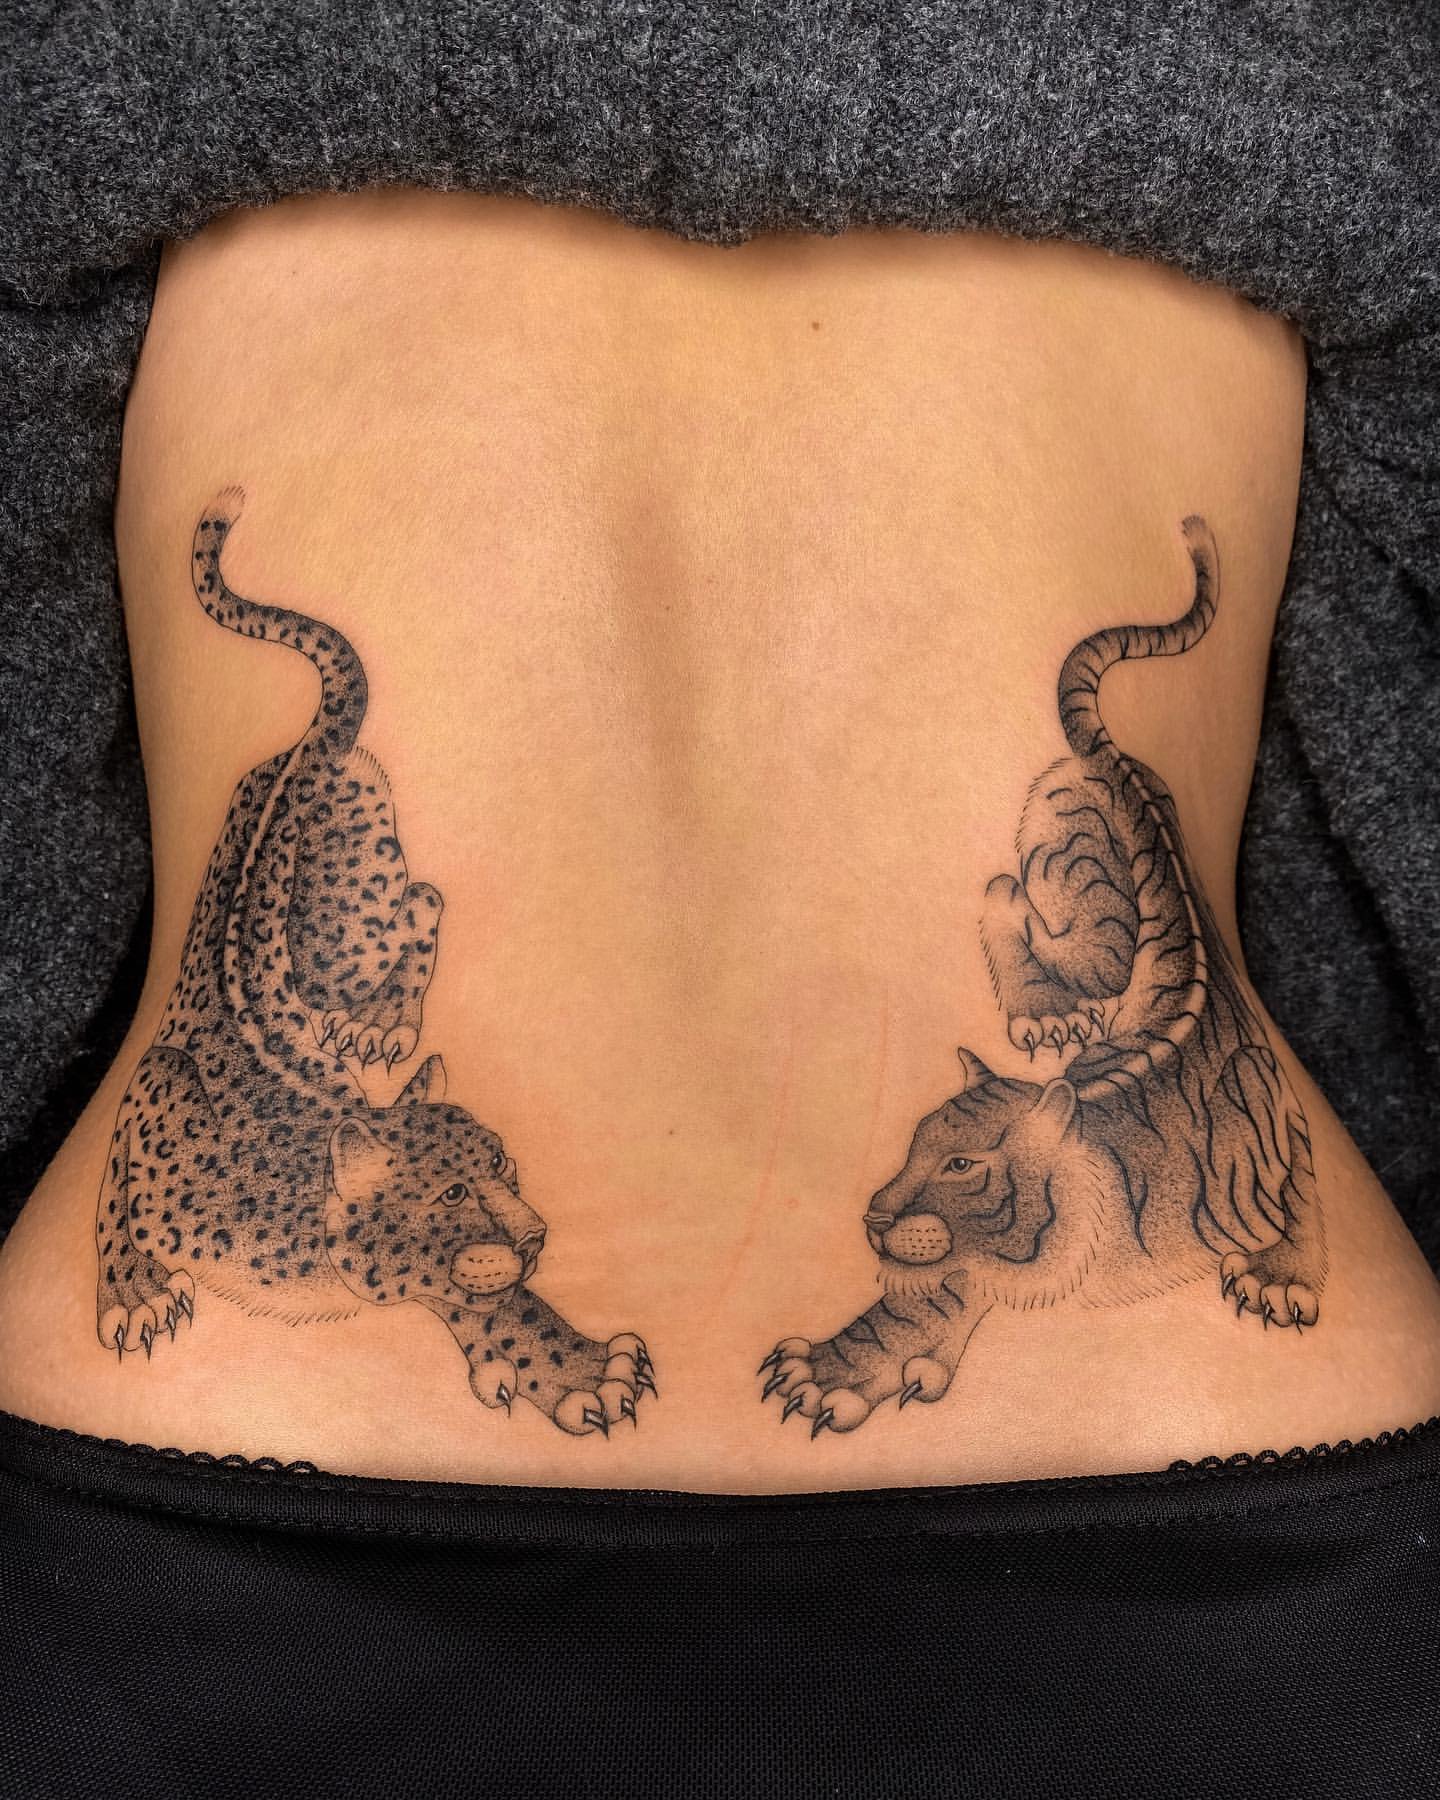 Lower Back Tattoo Ideas 11